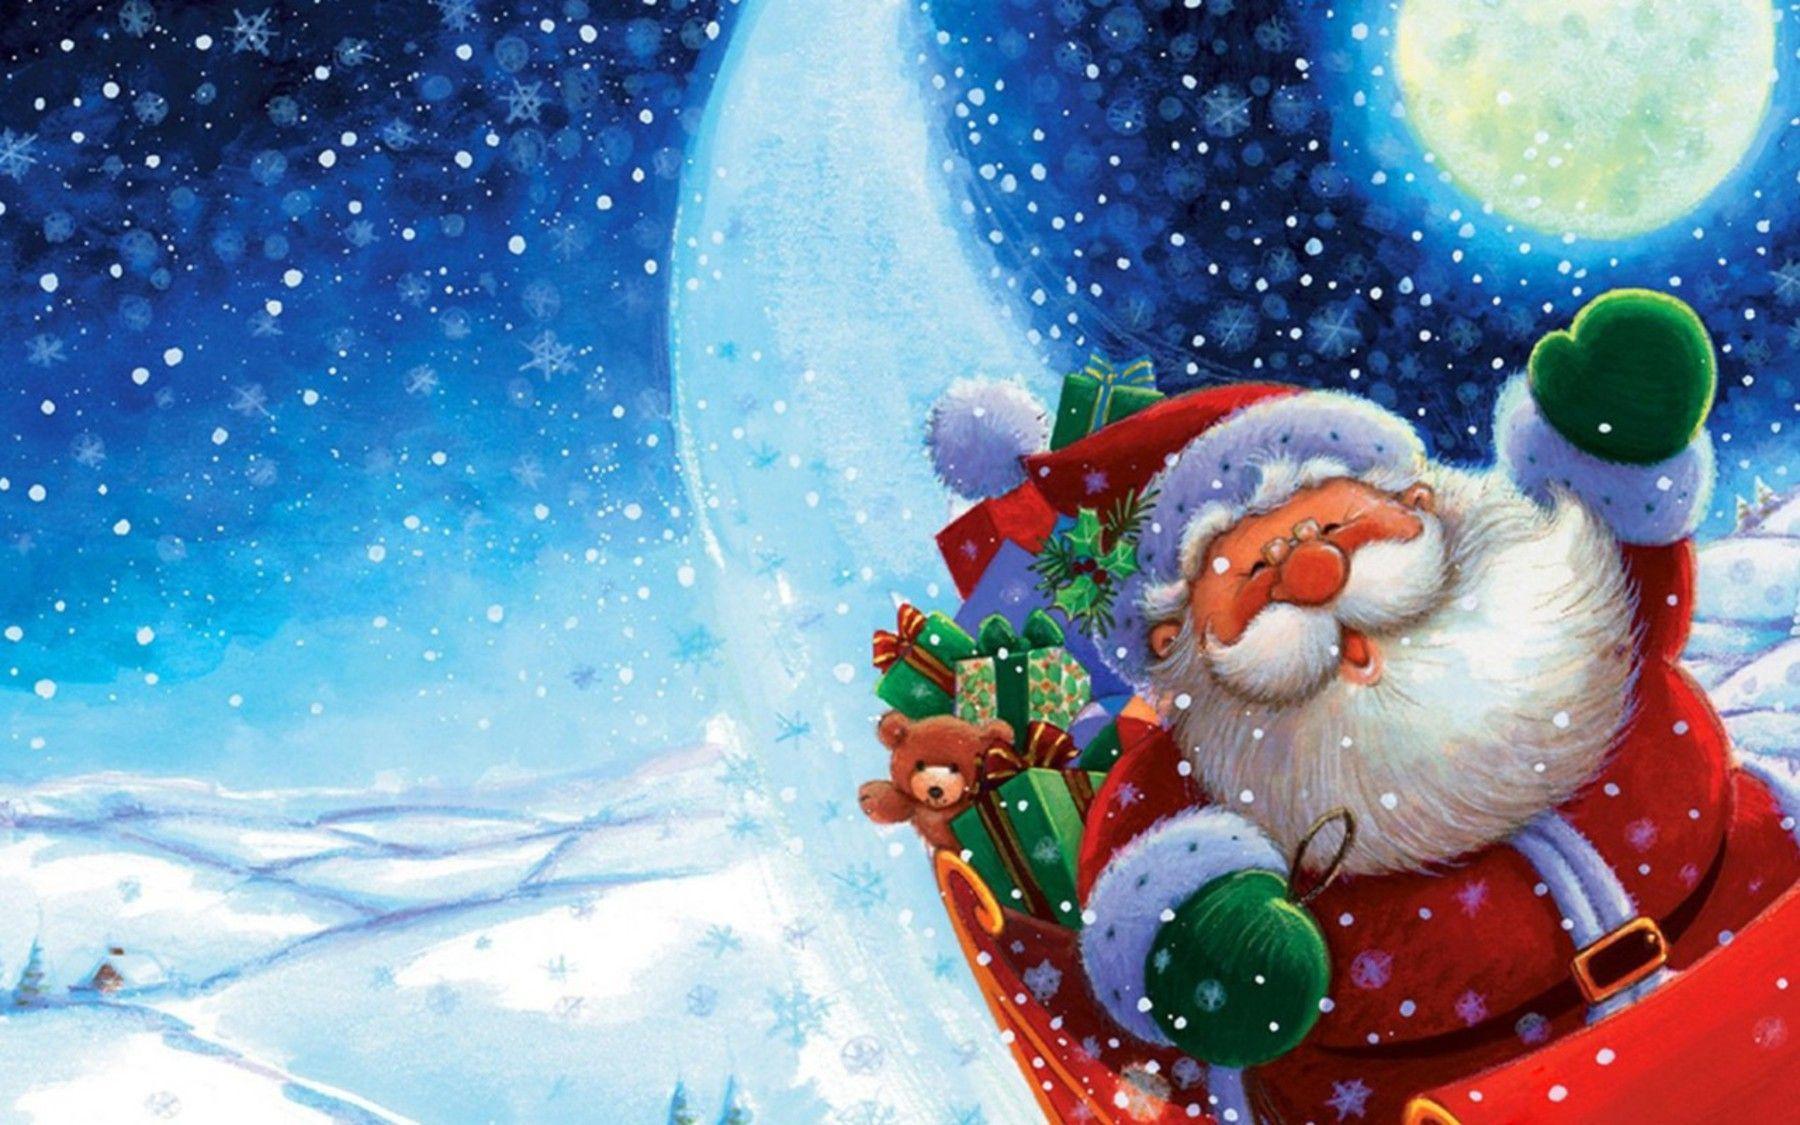 Snowman Santa Claus Christmas Silhouette Wallpaper 4K PC Desktop 4170e